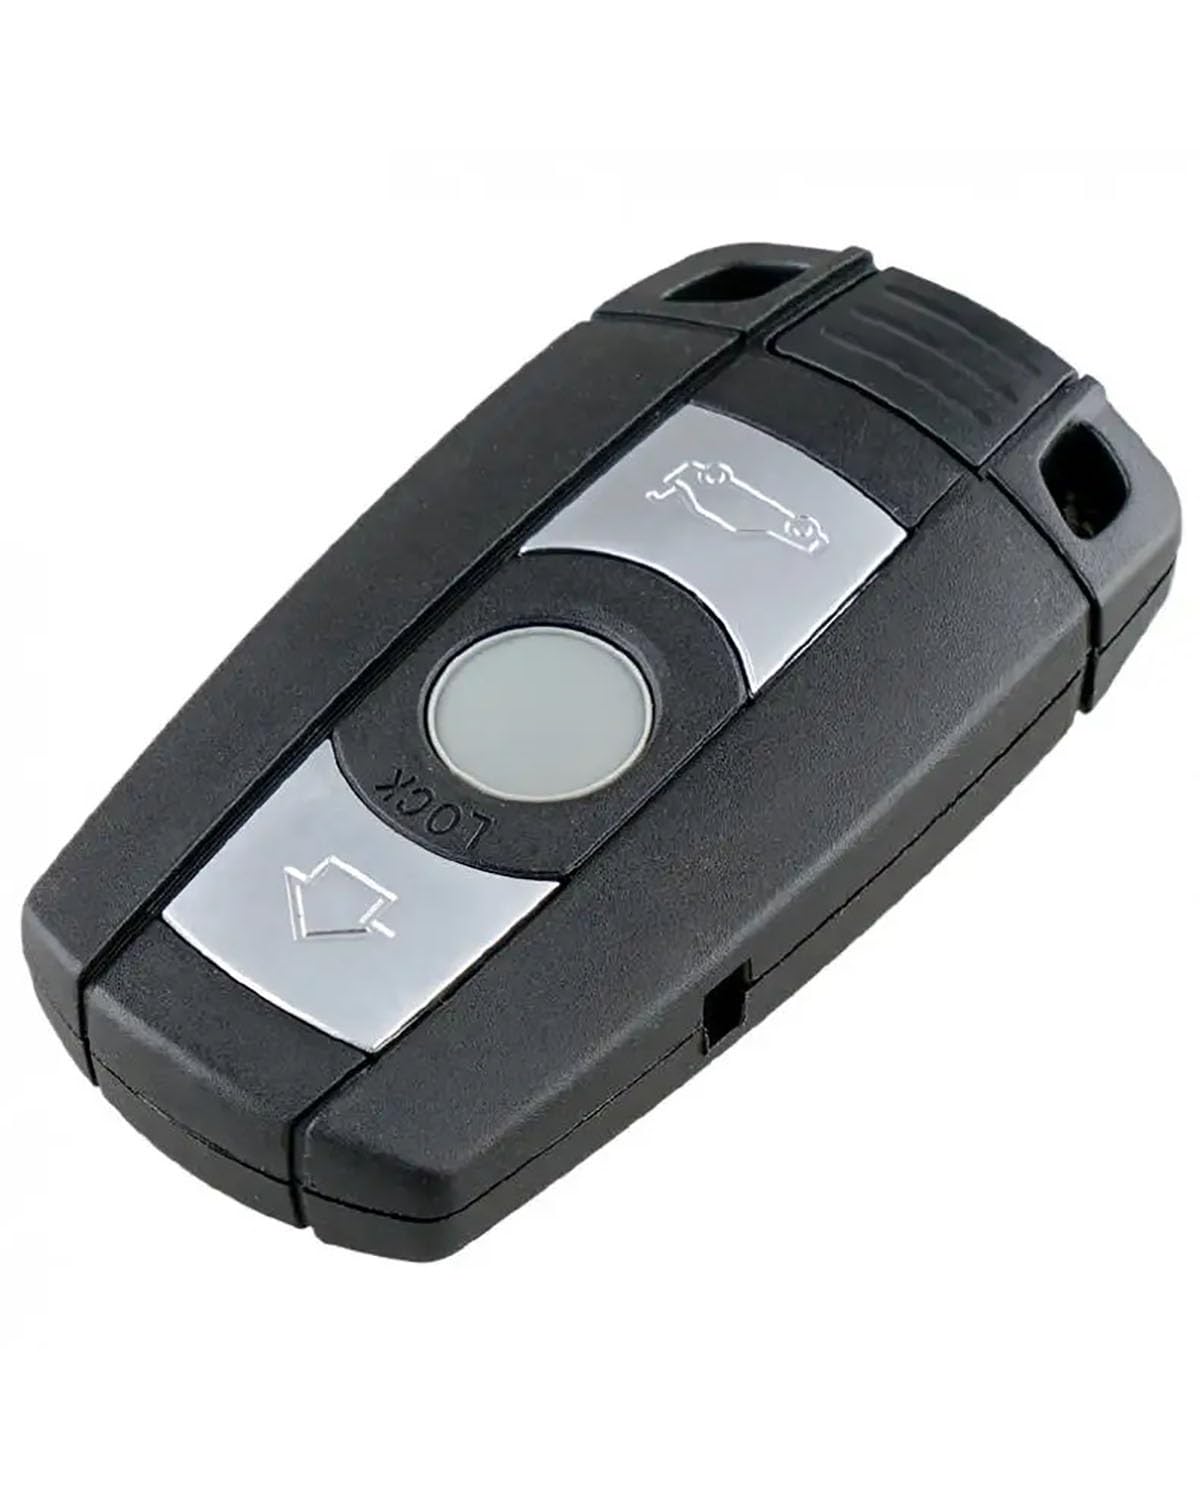 Funkschlüsseletui 3 Tasten Schlüsselanhänger Shell Einsatz Schlüssel Fernbedienung Fall Abdeckung Für 1 120 E60 E87 3 320 E90 E91 E92 5 Für X1 Für X5 Für X6 Z4 Autoschlüsseletui von MXDDWLKJ